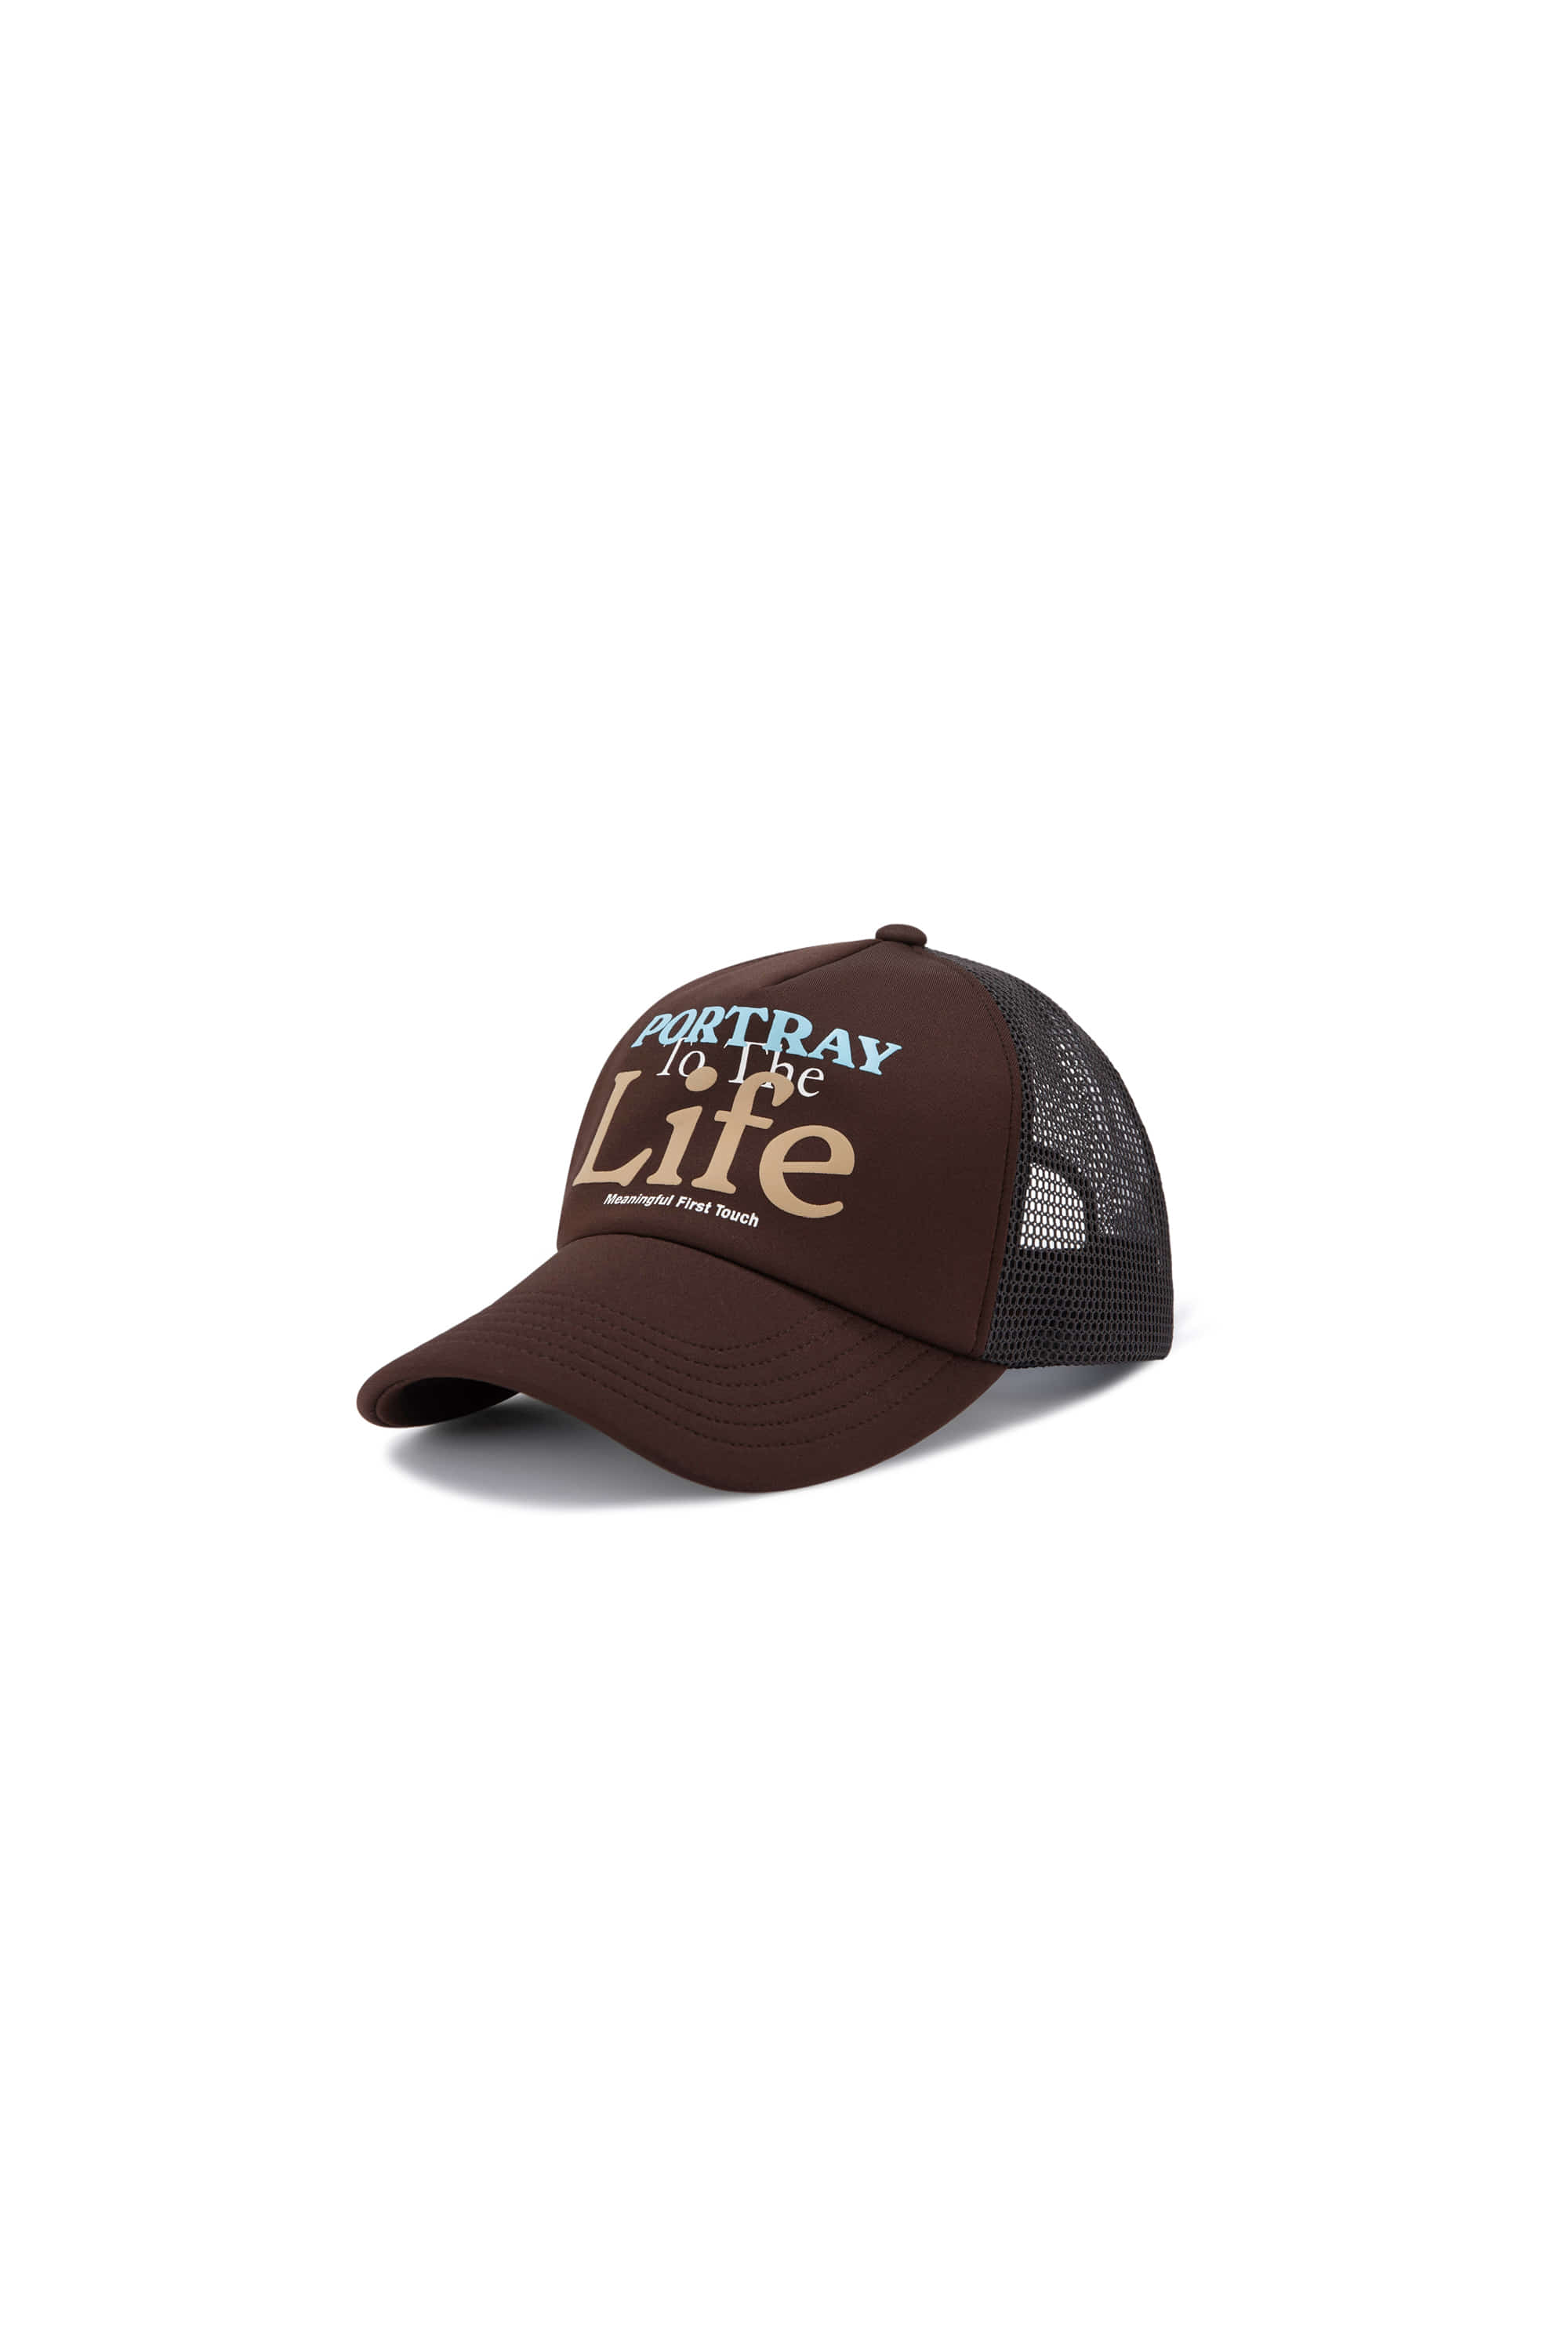 LIFE TRUCKER CAP - BROWN